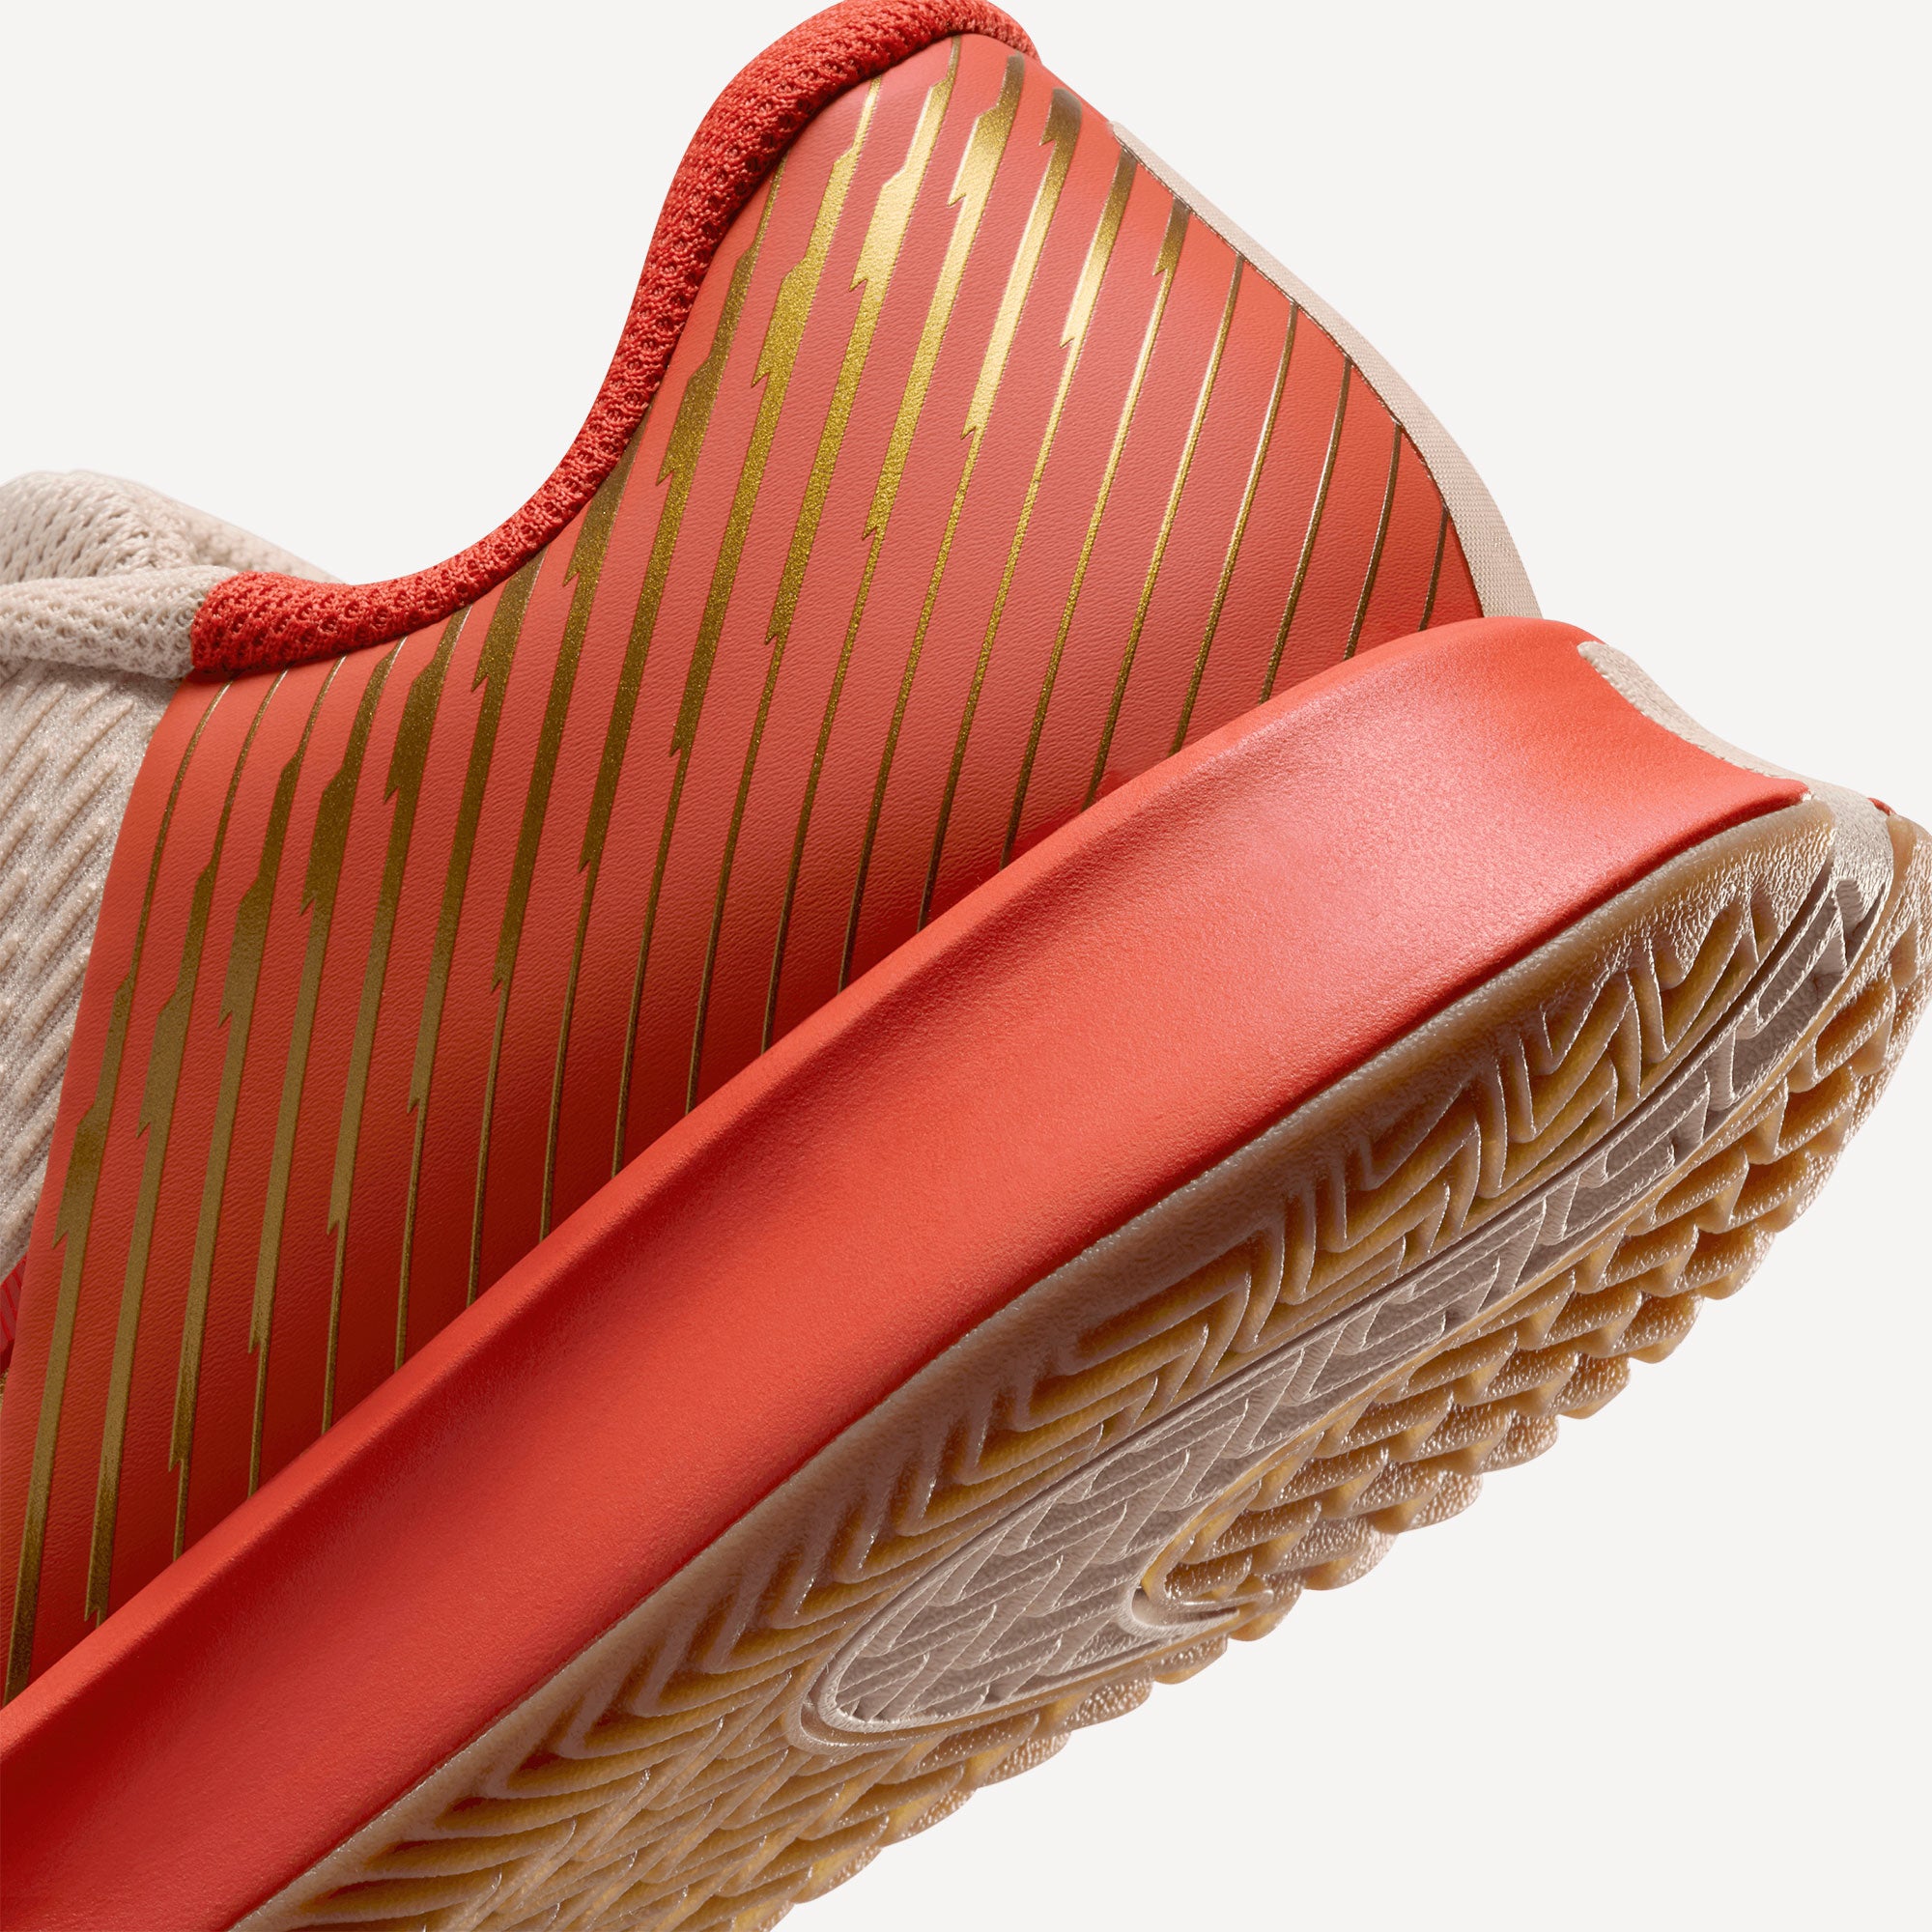 NikeCourt Air Zoom Vapor Pro 2 Premium Women's Clay Court Tennis Shoes - Sand (8)